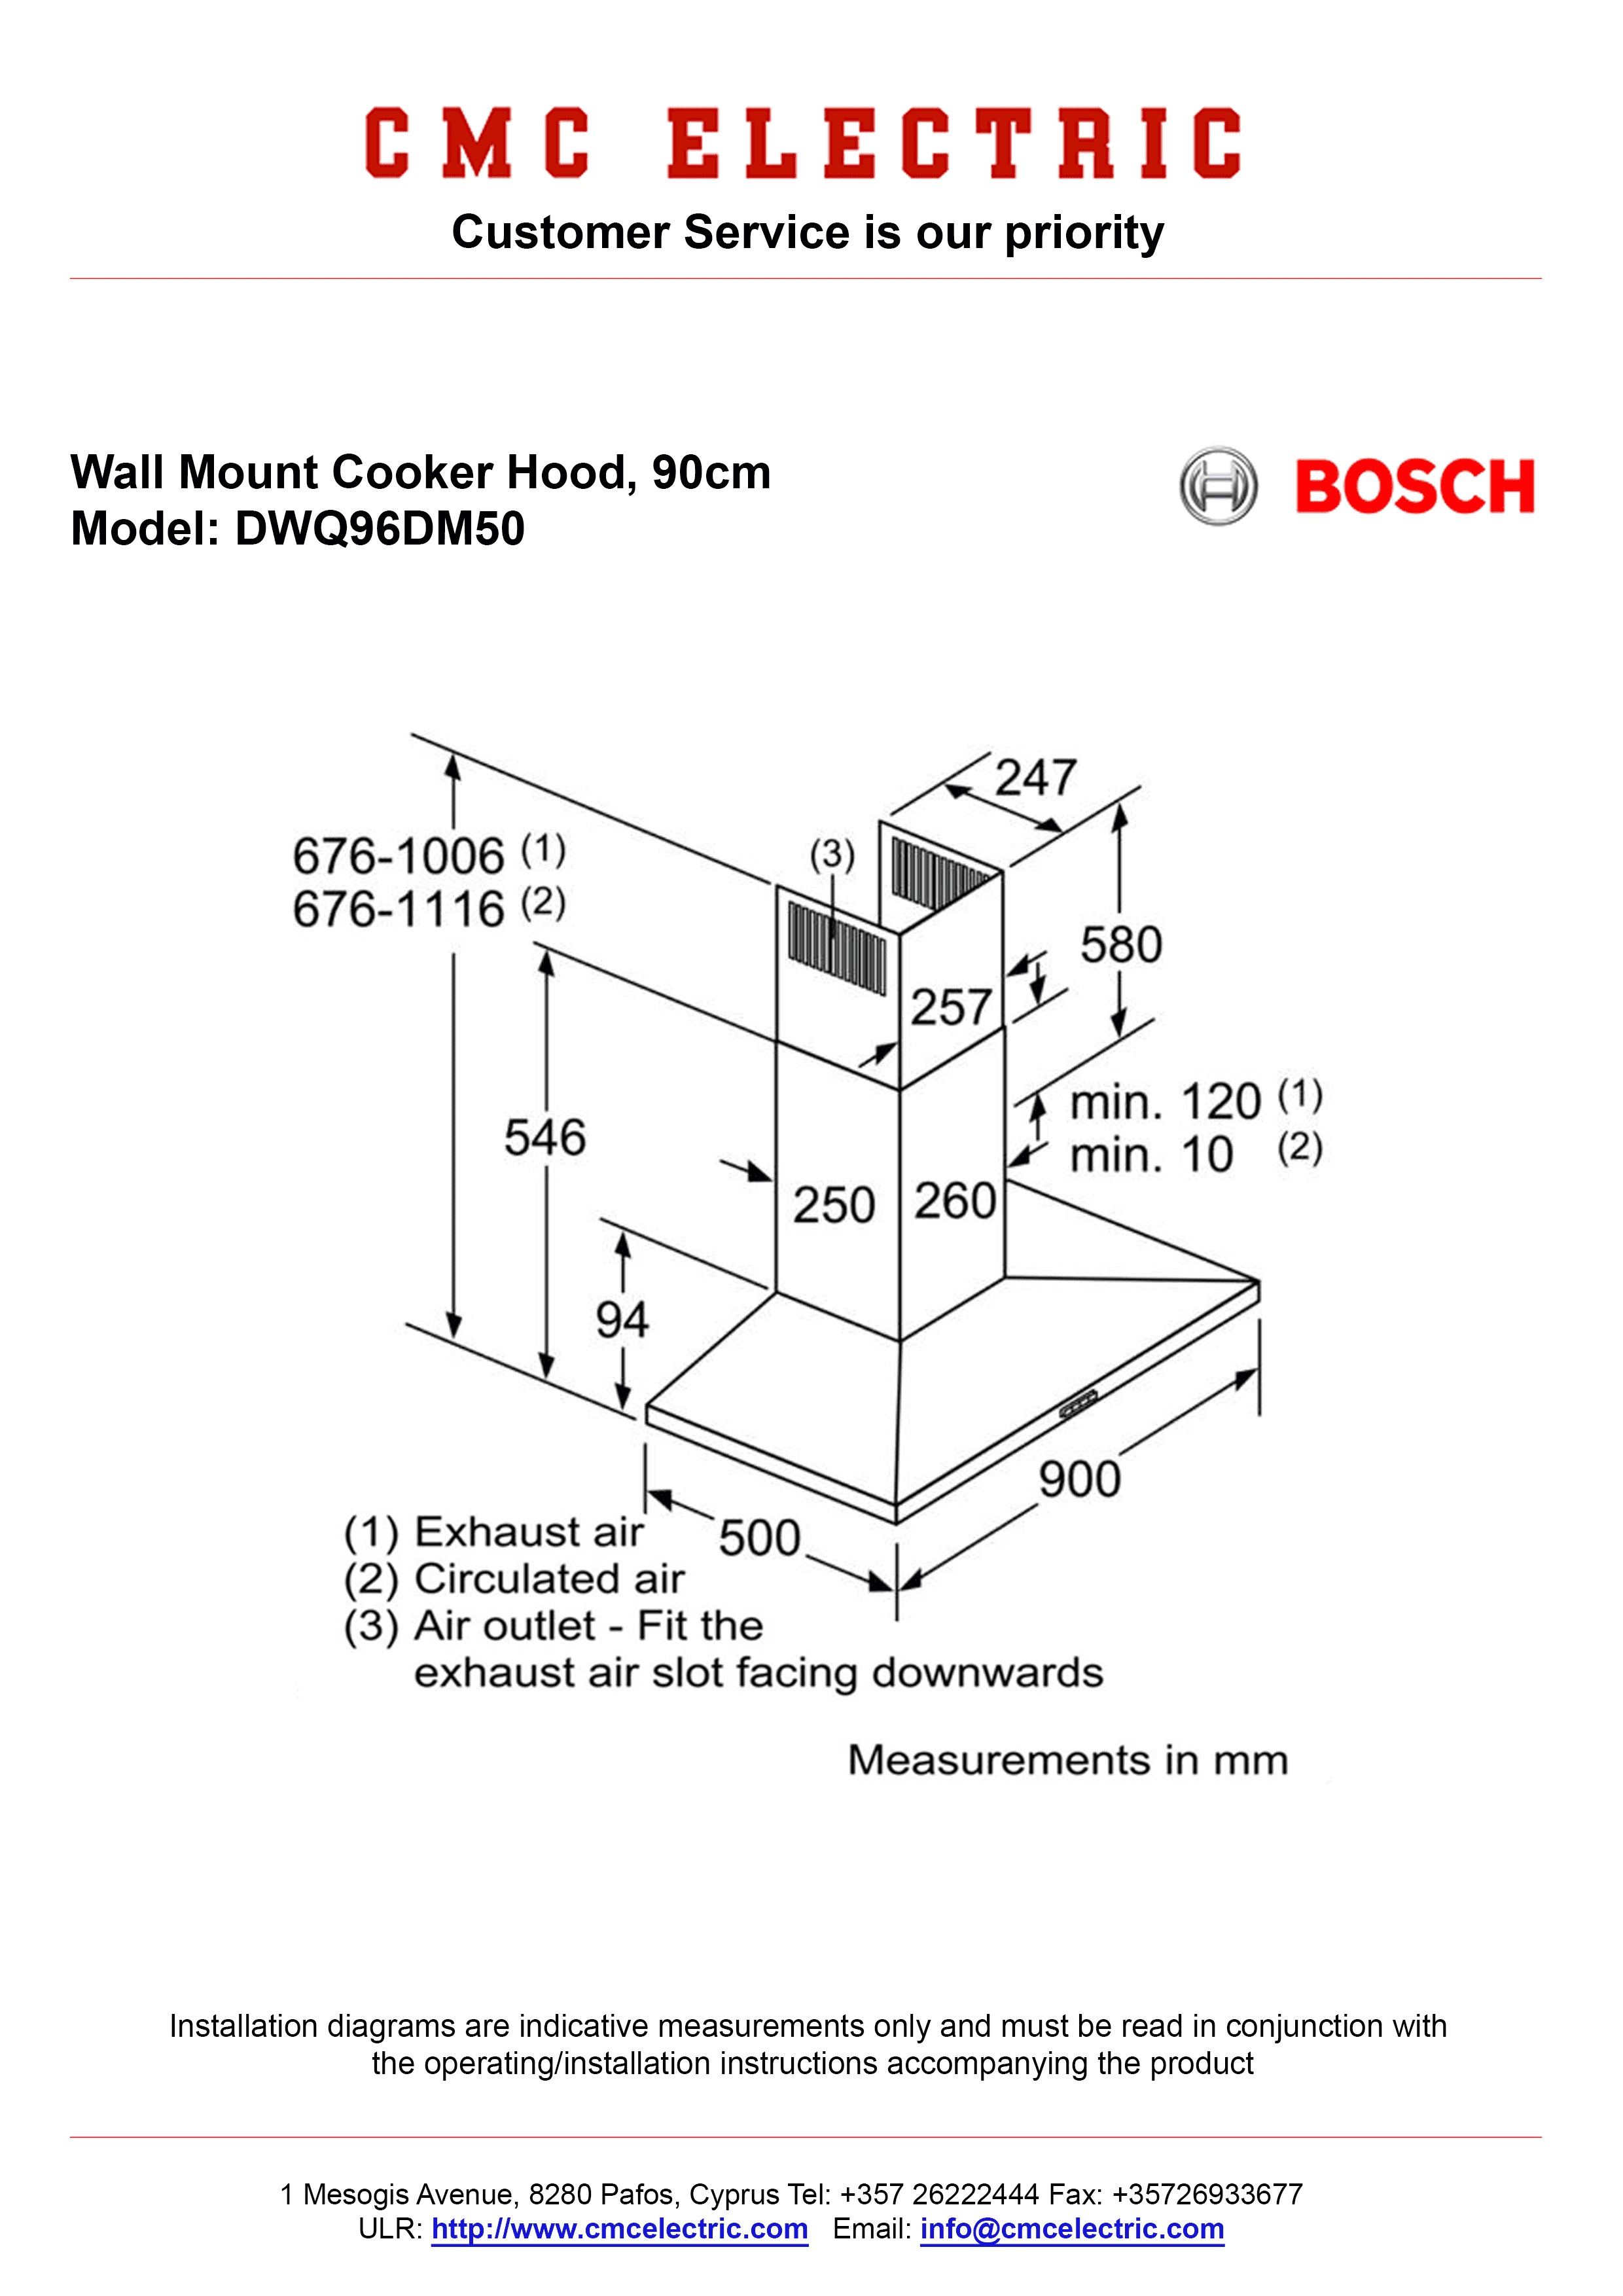 bosch cooker hood instruction manual